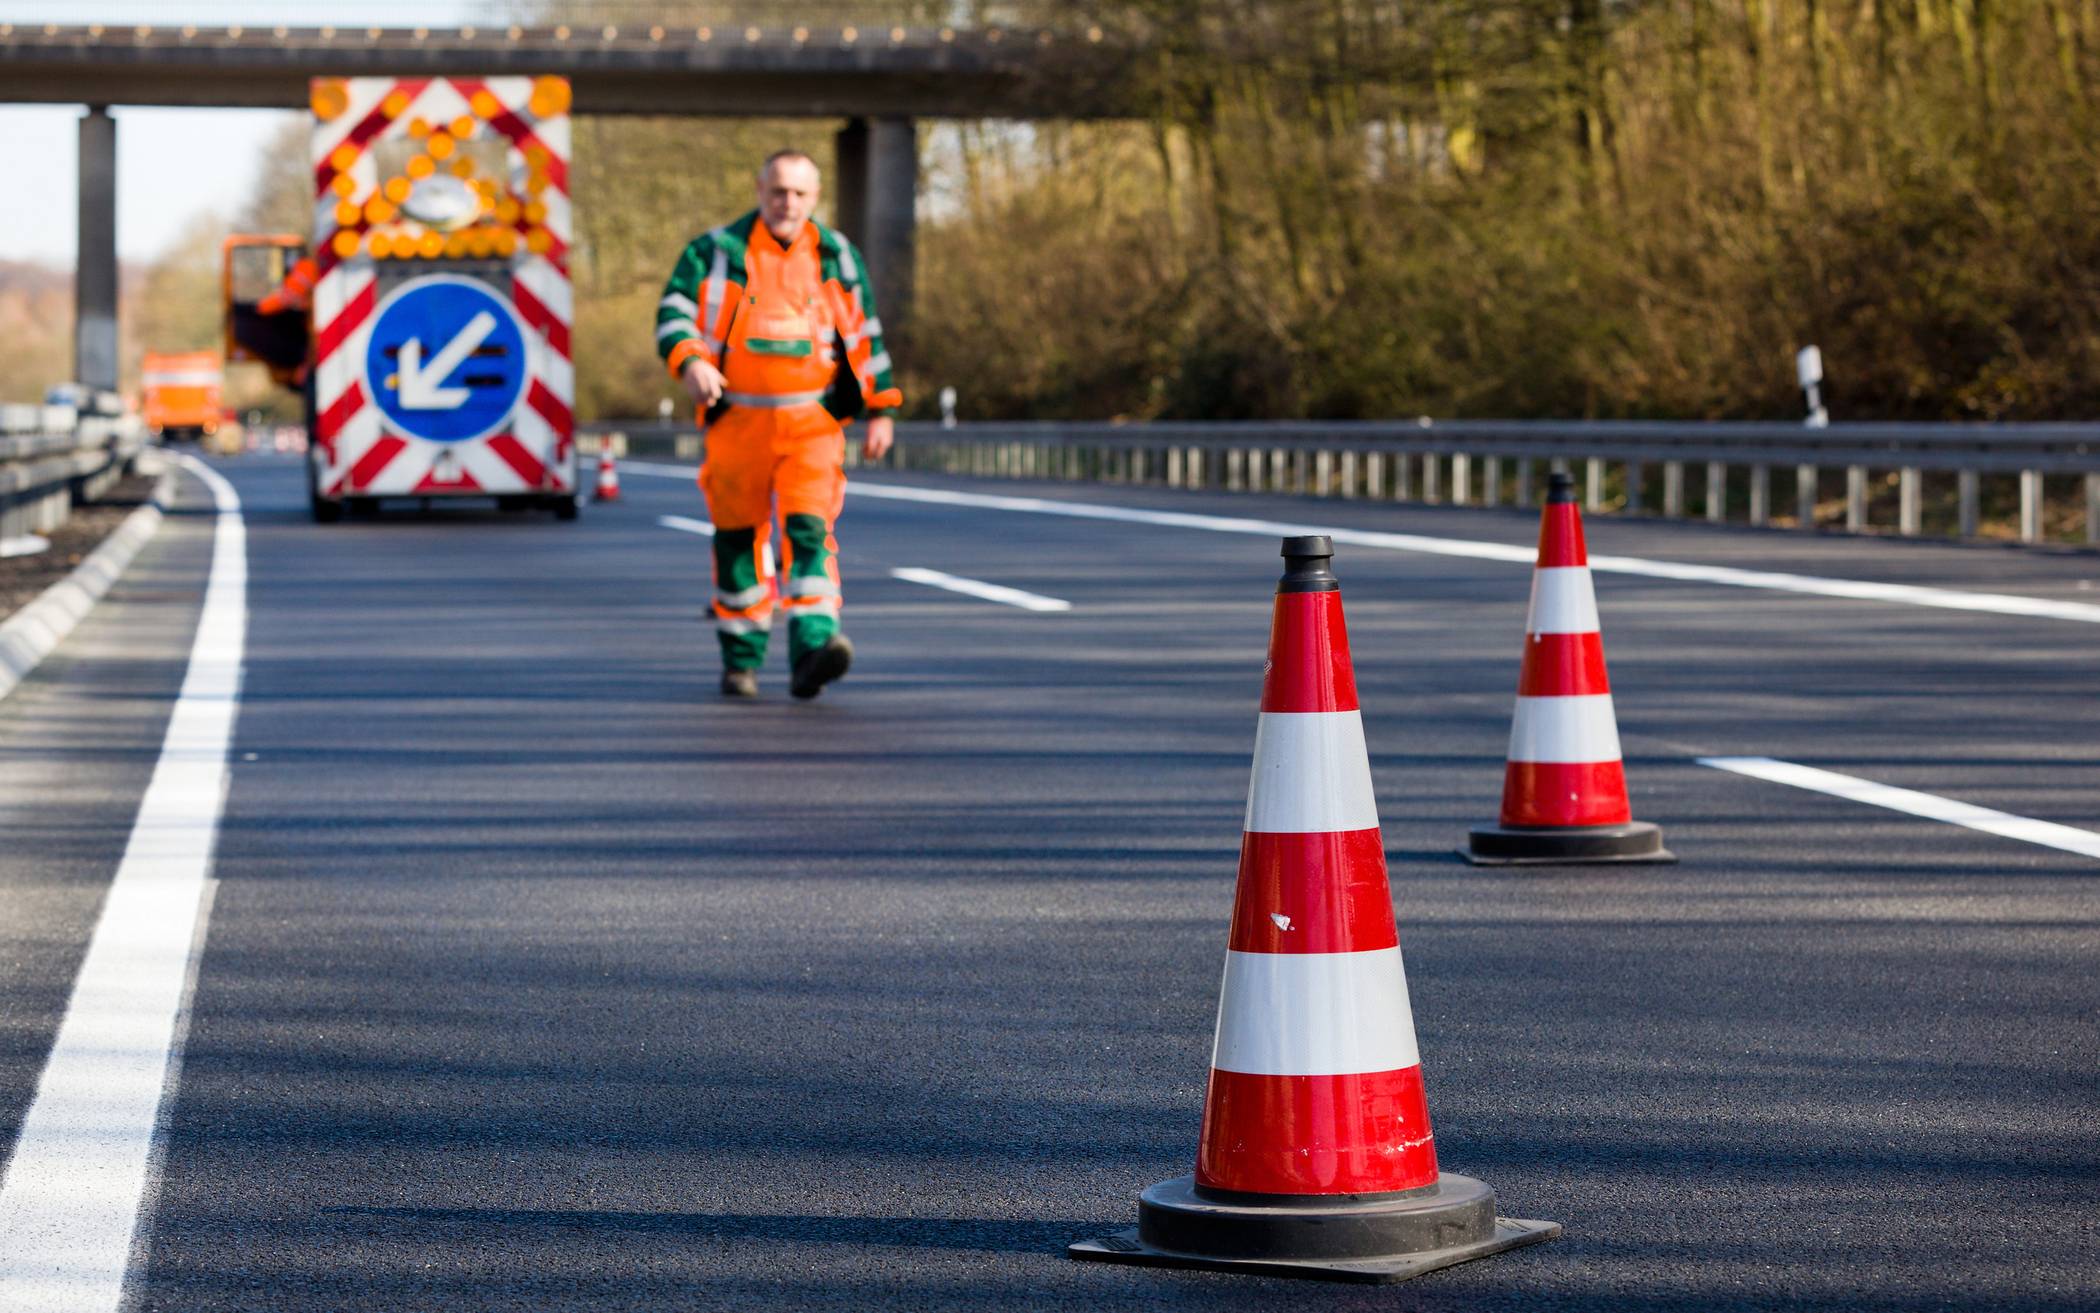 Instandsetzung der Brücke beginnt Ende des Monats: A46: Verkehrsbehinderungen und Sperrungen auf der Fleher-Brücke im August